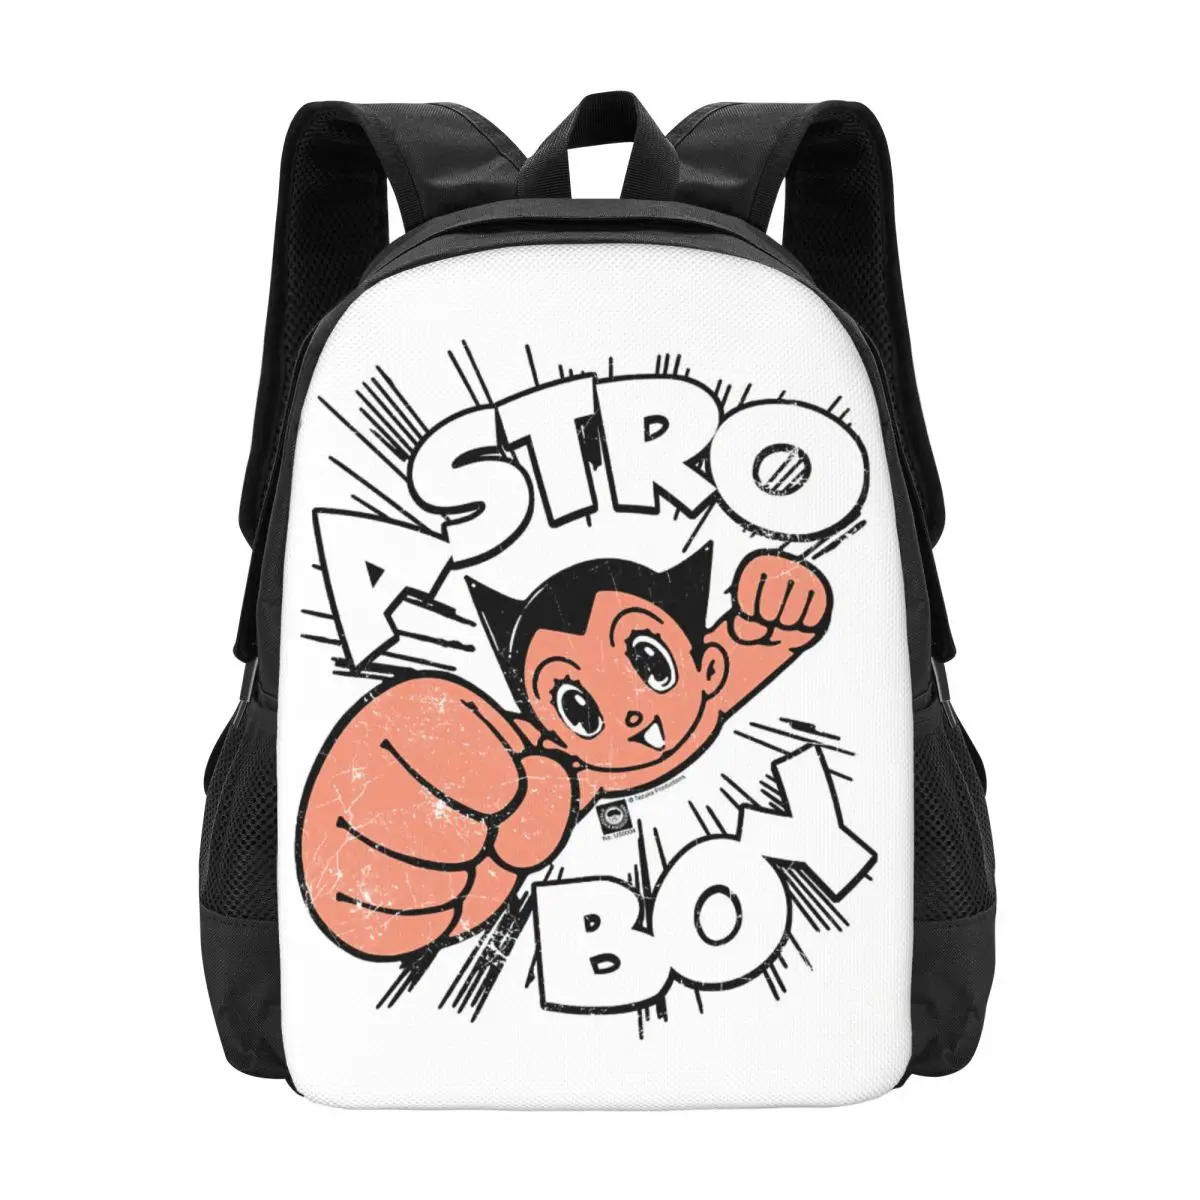 Astroboy Backpack for Girls Boys Travel RucksackBackpacks for Teenage school bag